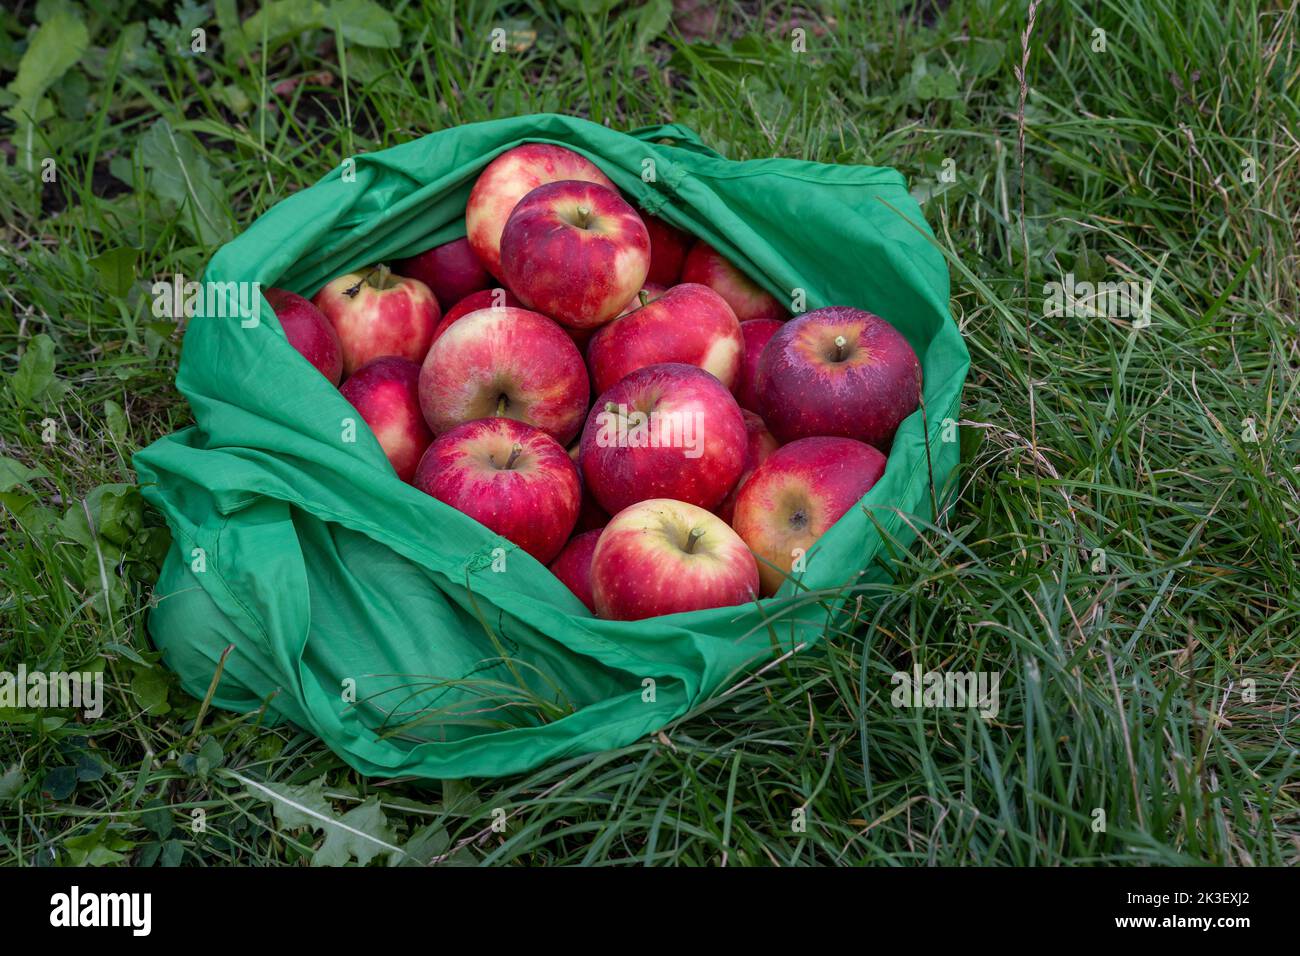 Red organic freshly harvested elstar apples in reusable green shopping bag Stock Photo